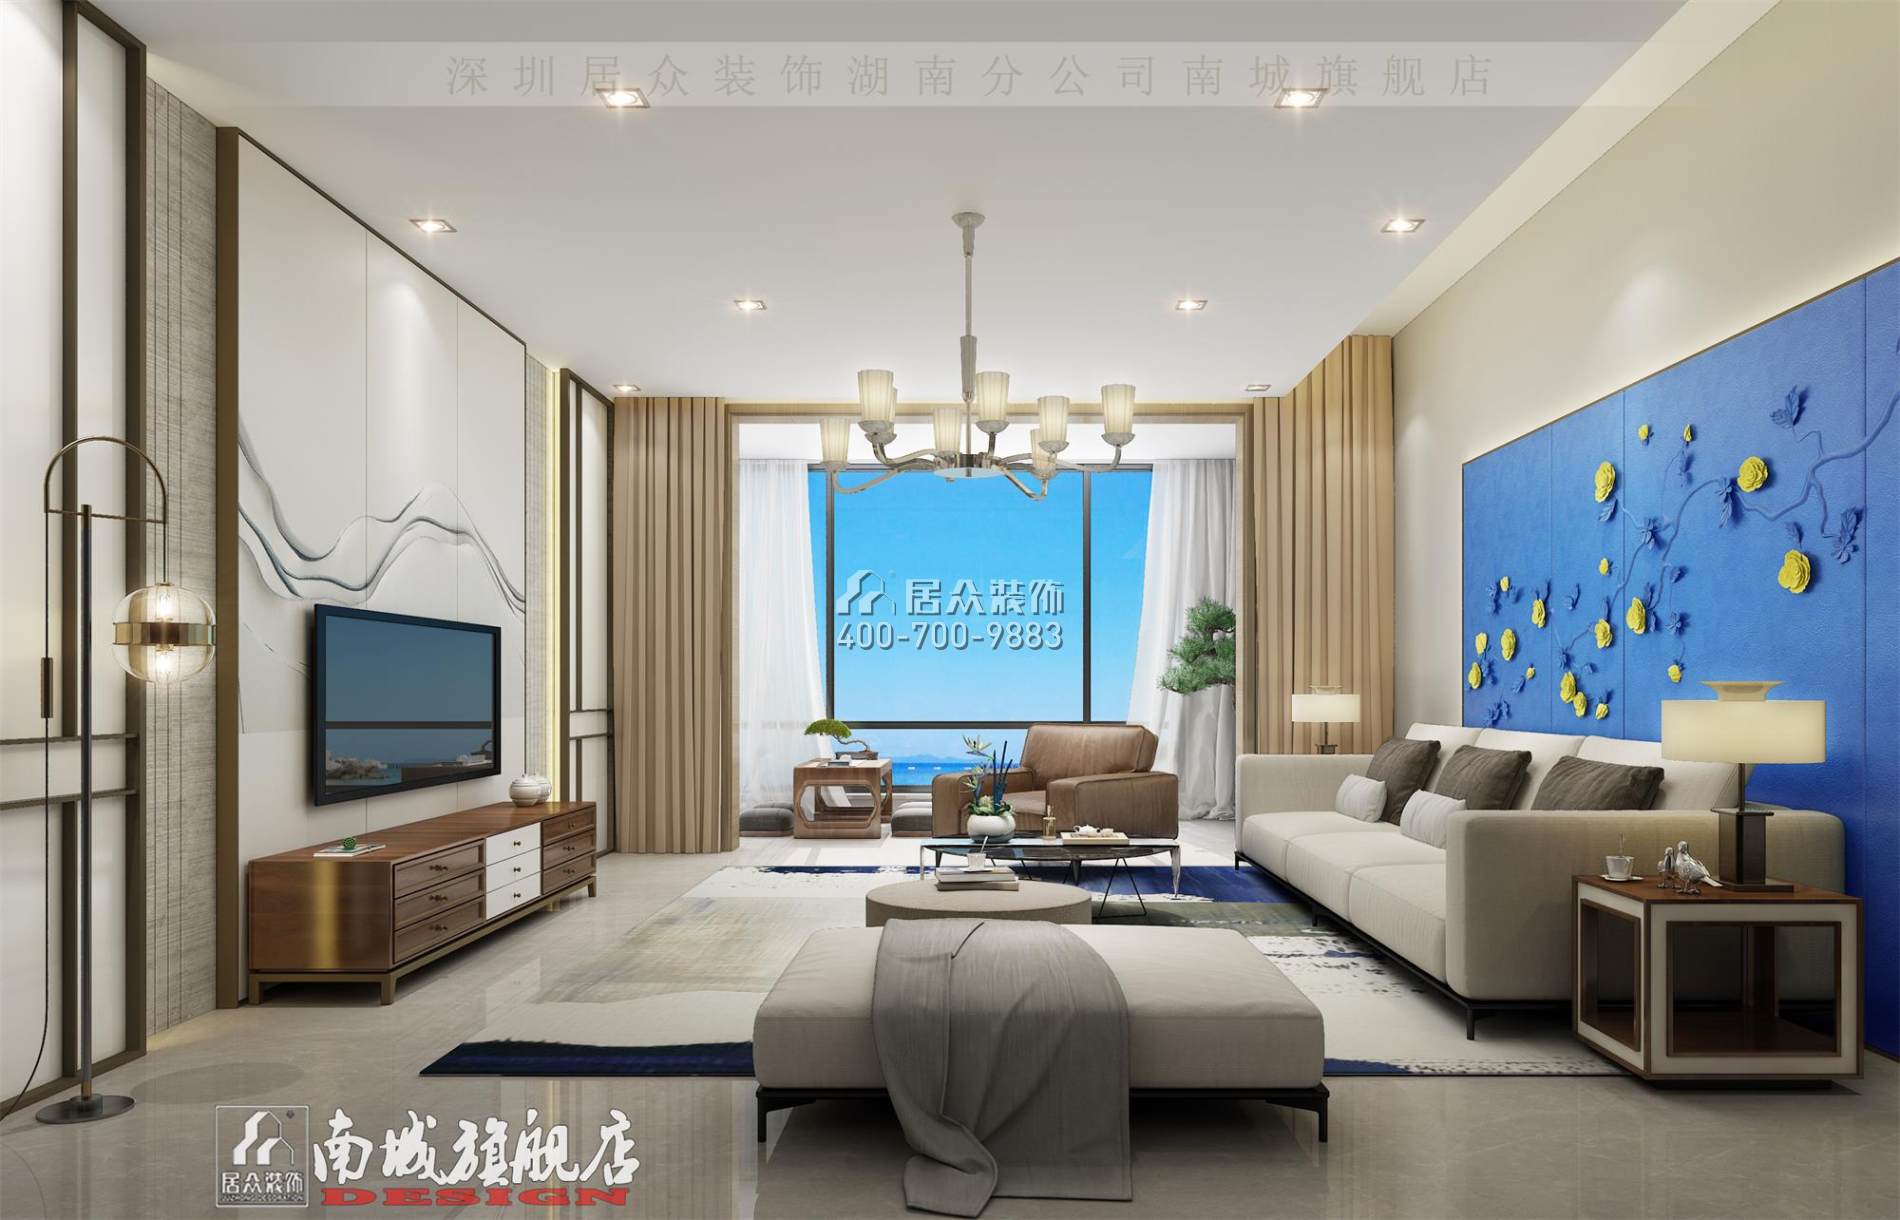 中建江山壹号232平方米中式风格平层户型客厅装修效果图